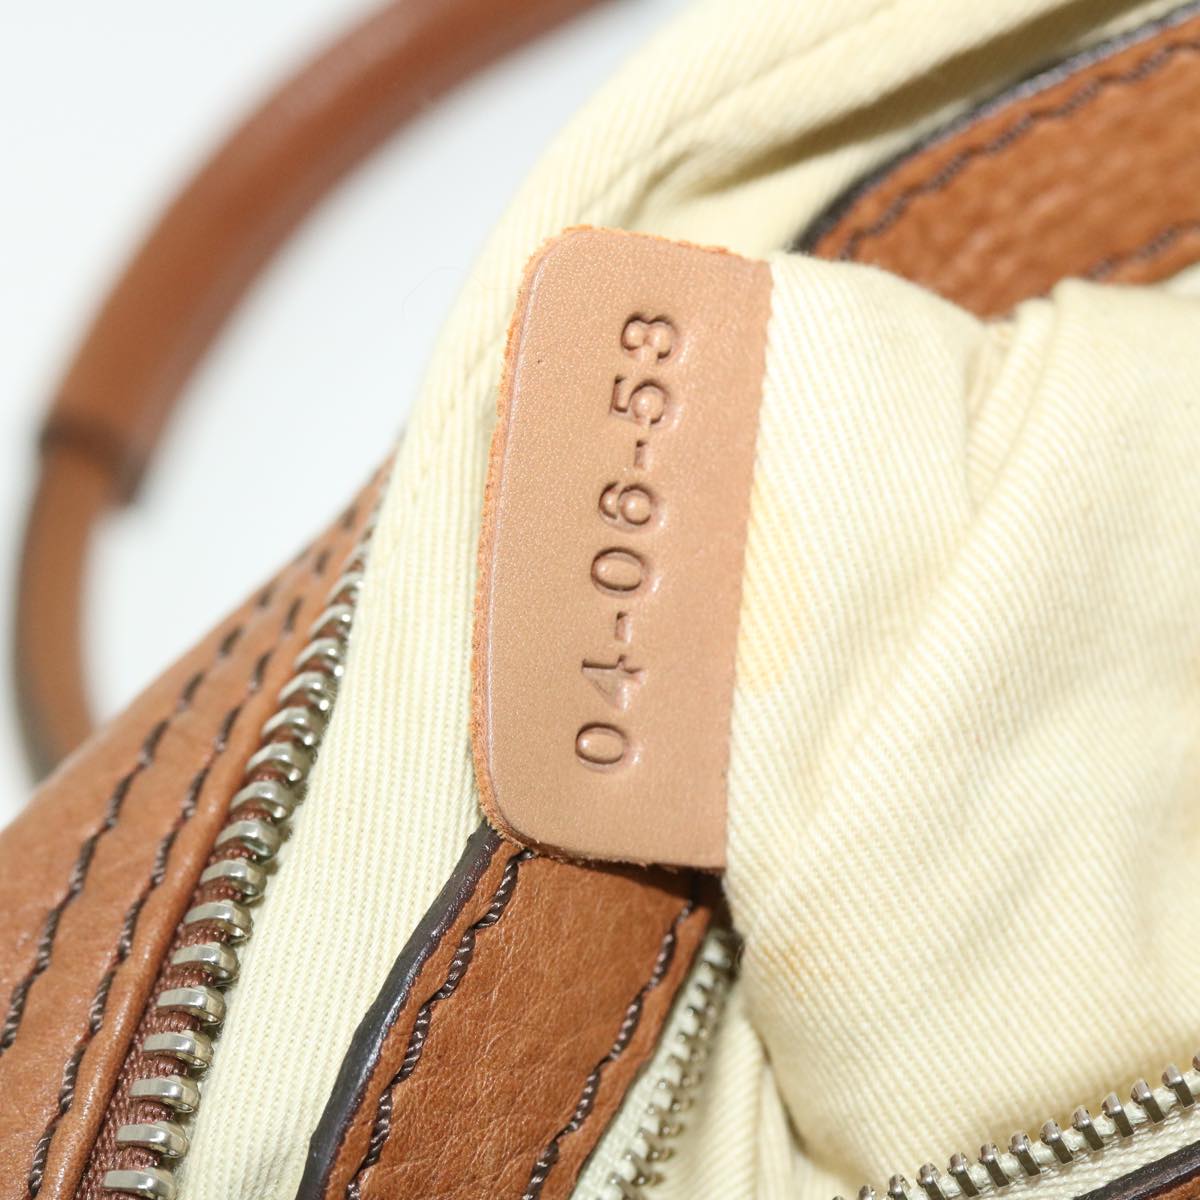 Chloe Paddington Hand Bag Leather Brown 04-06-53 Auth am4849